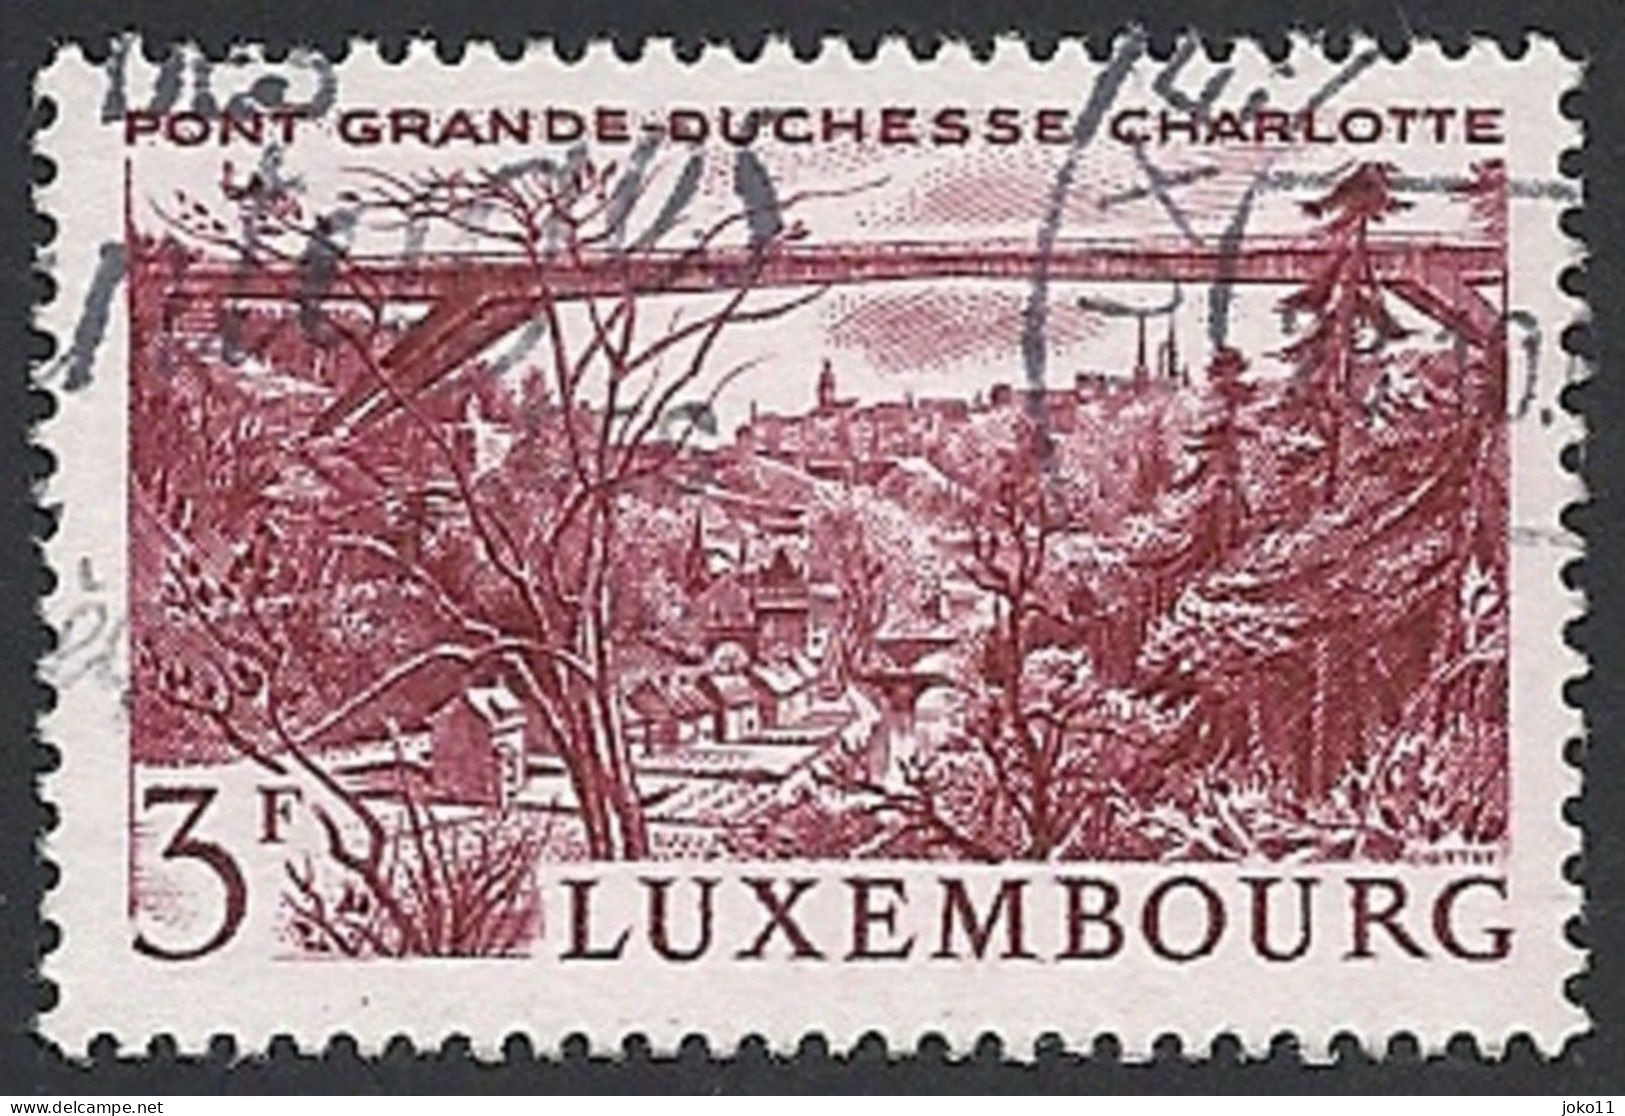 Luxemburg, 1966, Mi.-Nr. 737, Gestempelt, - Used Stamps